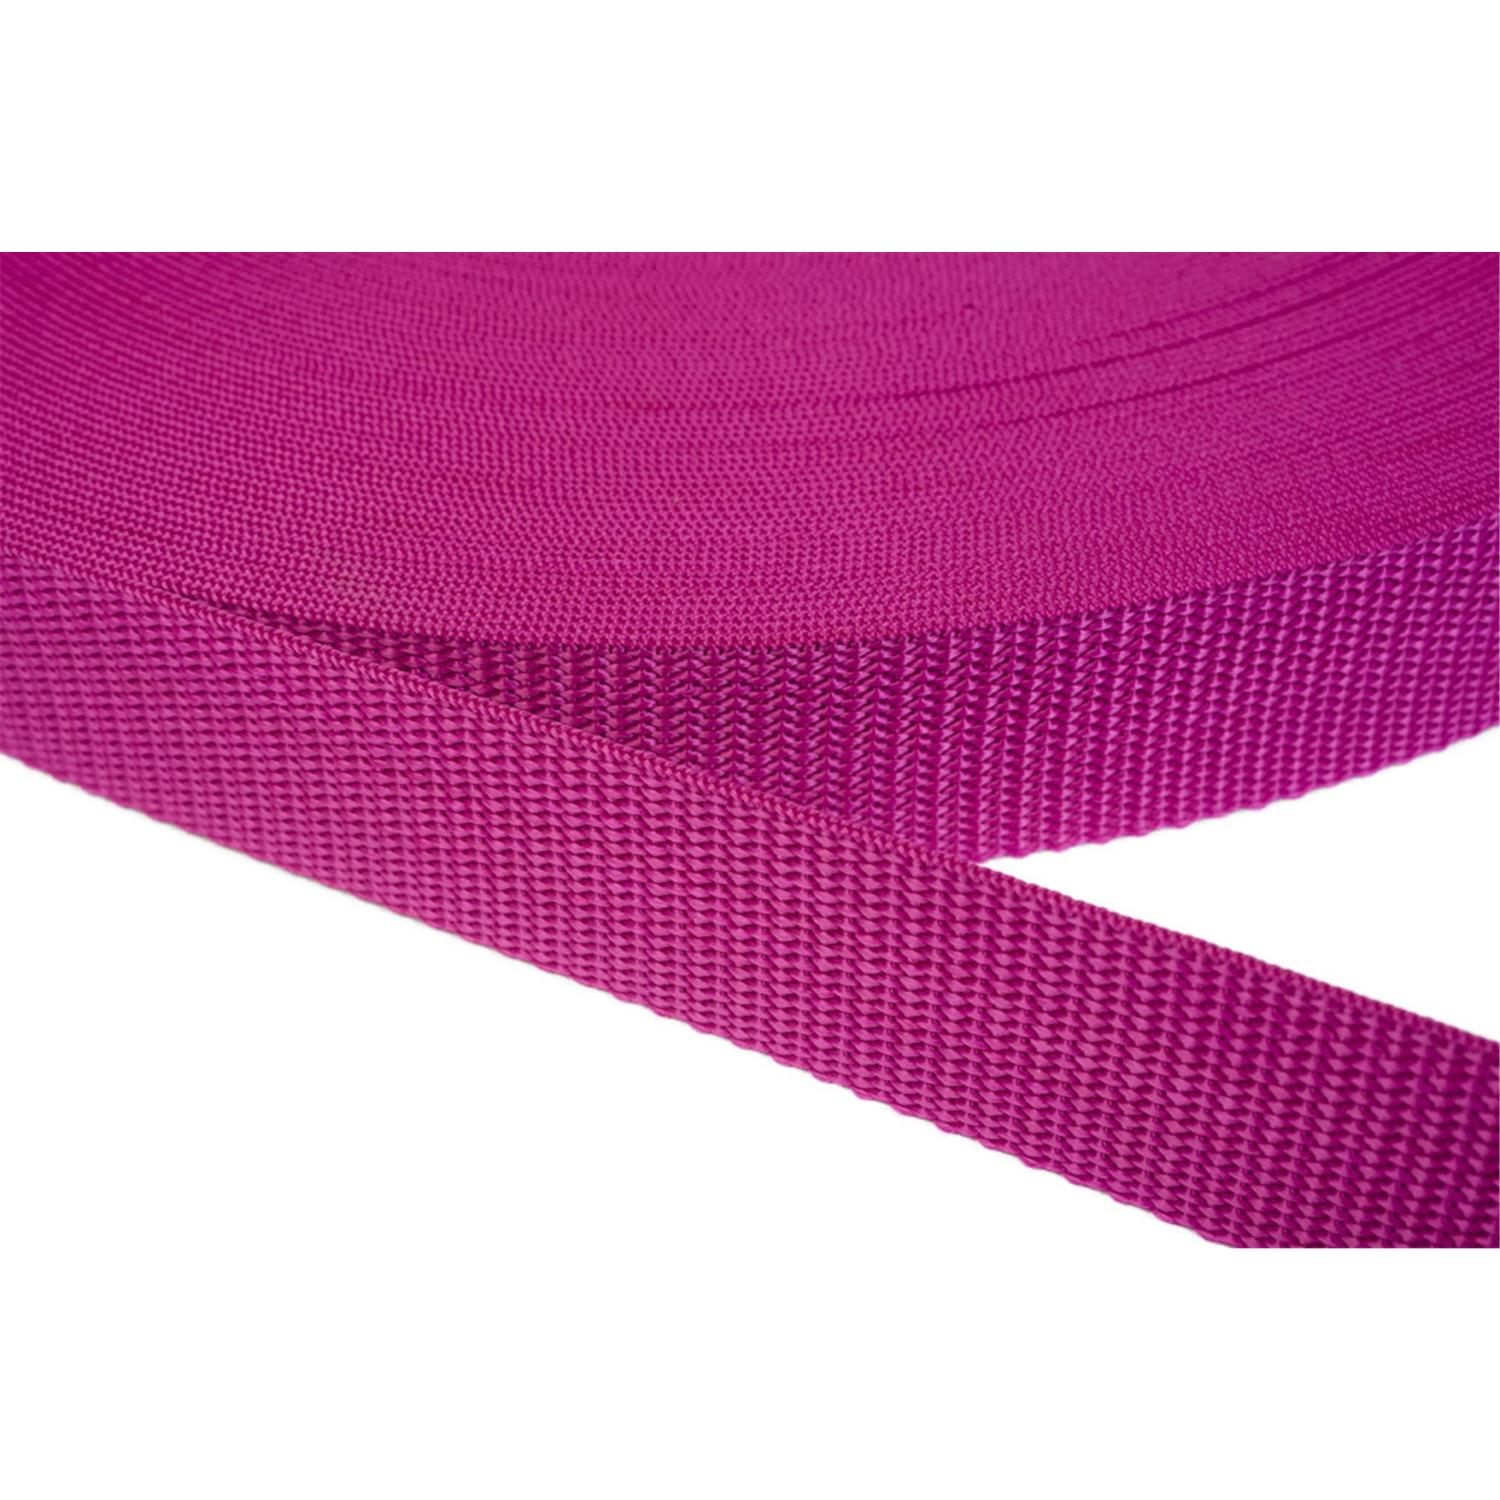 Gurtband 20mm breit aus Polypropylen in 41 Farben 17 - dunkles magenta 12 Meter